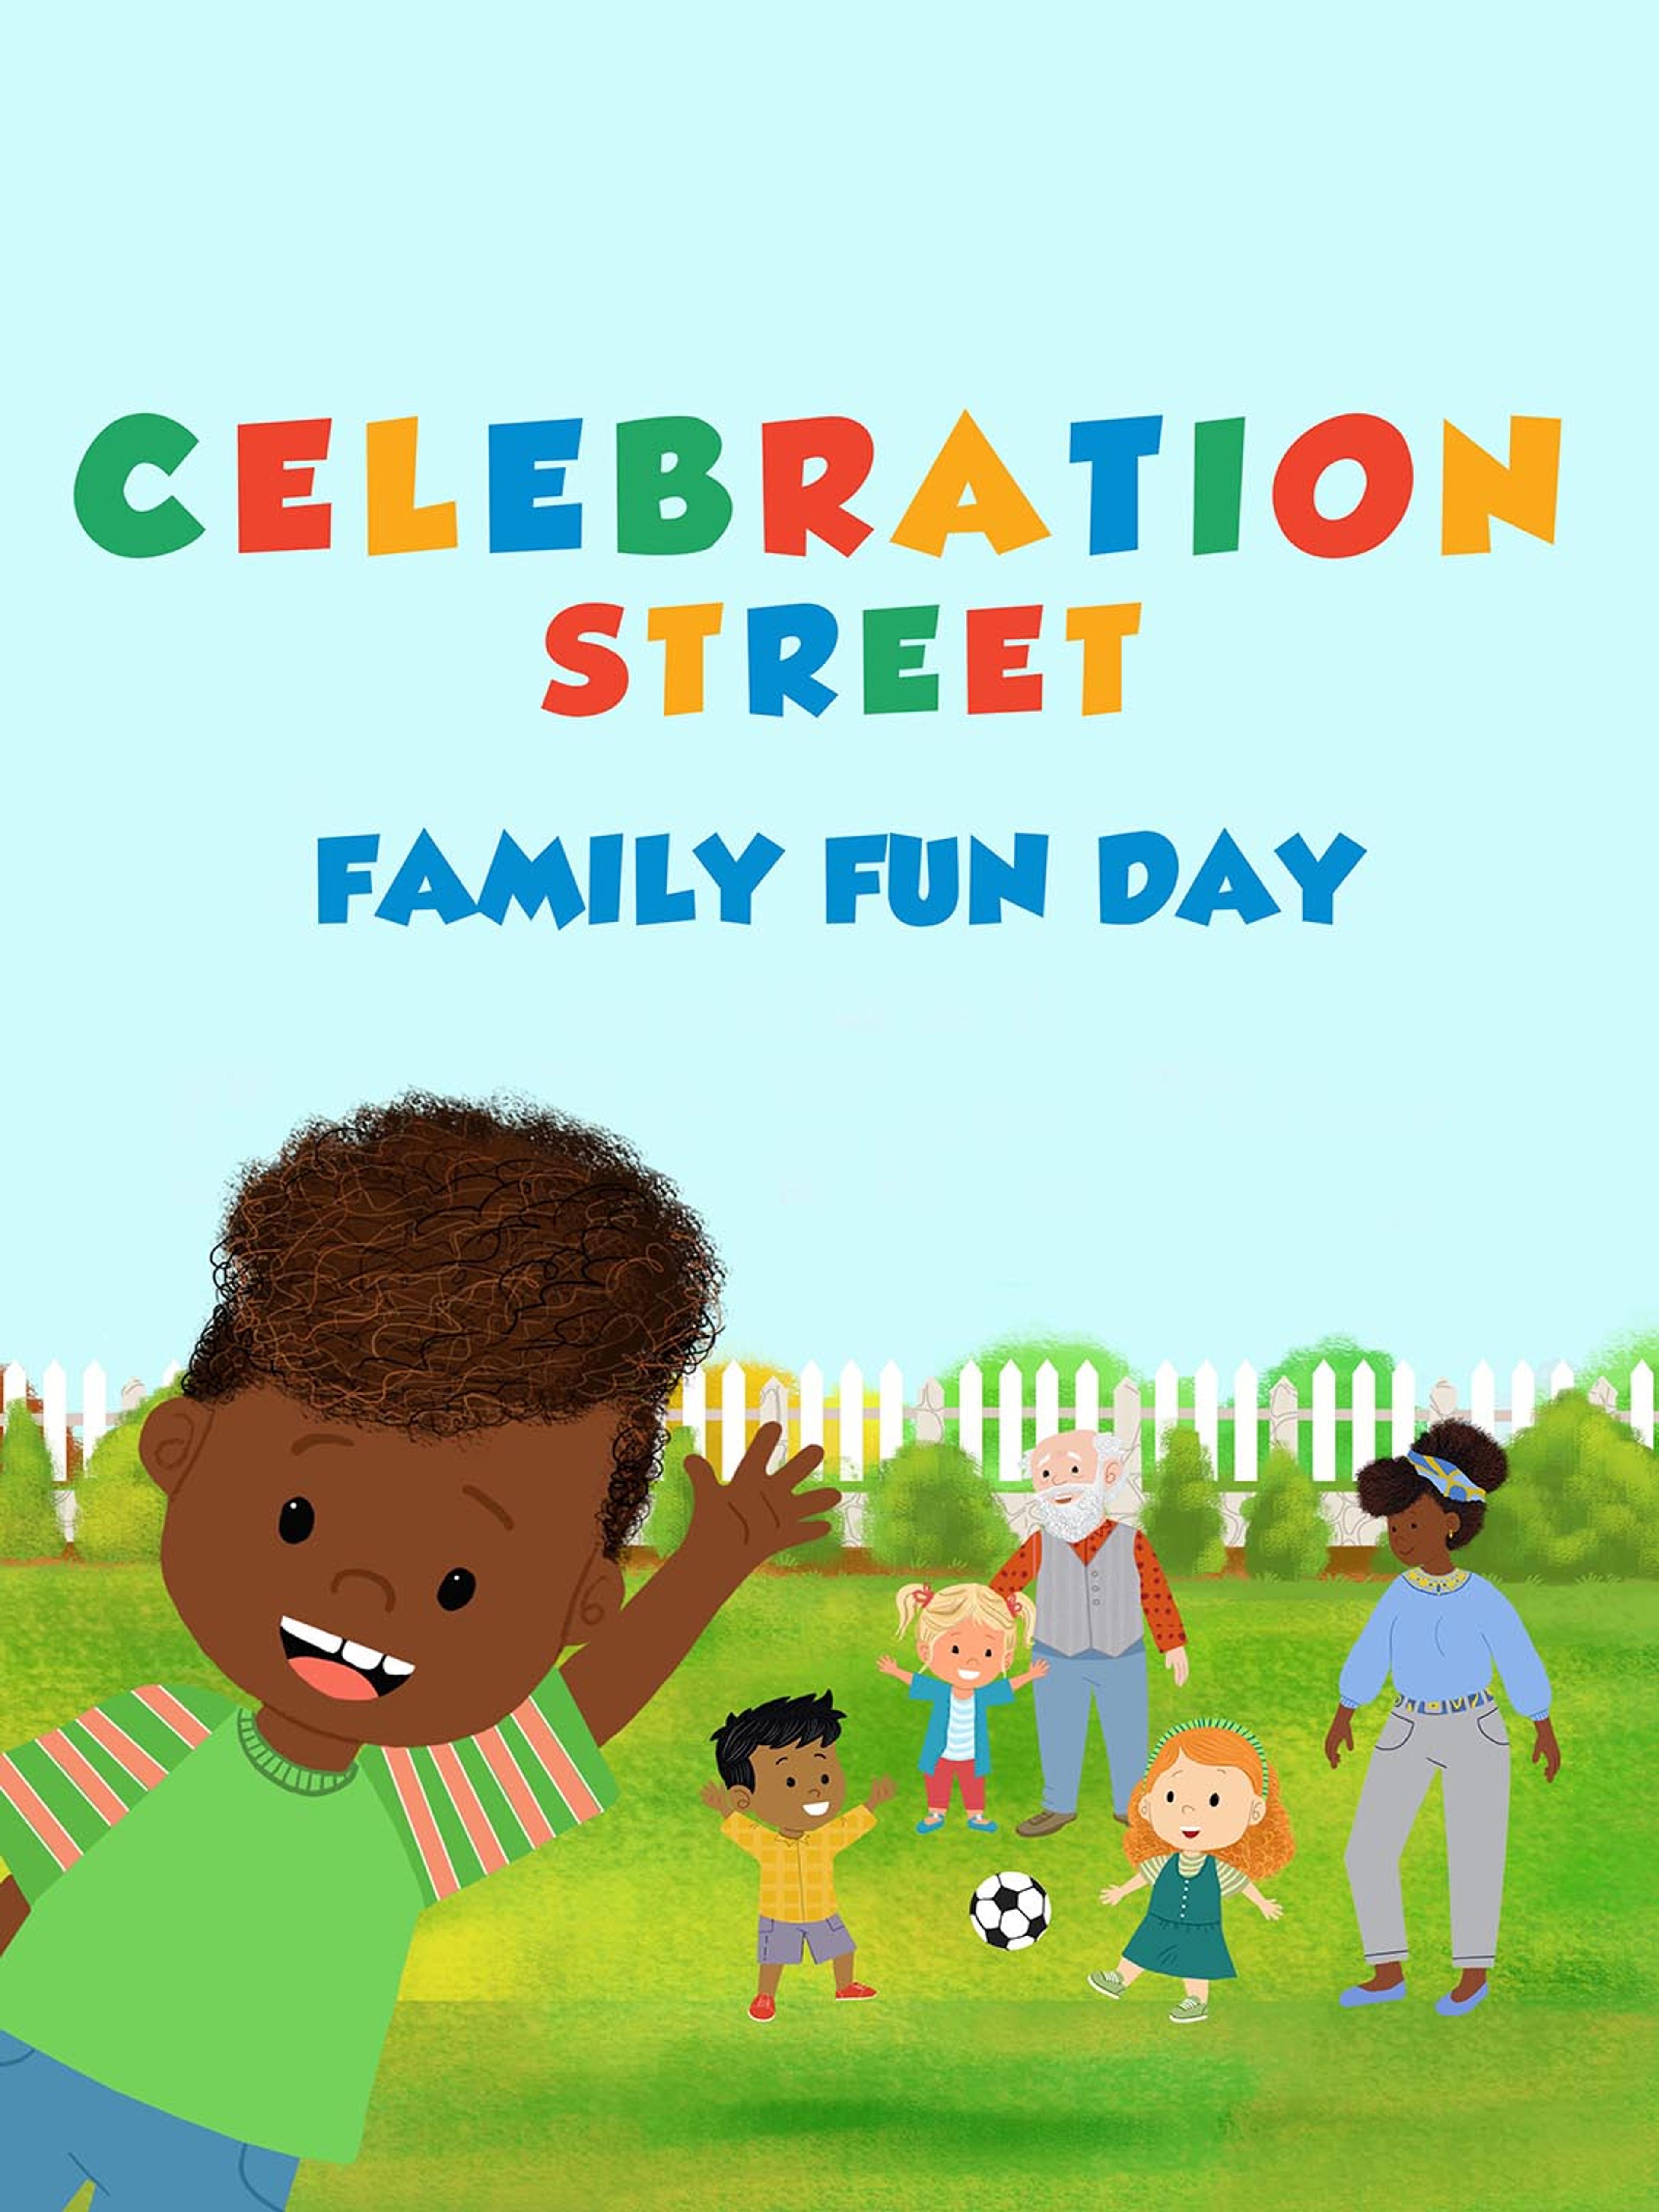 Celebration street: Family Fun Day